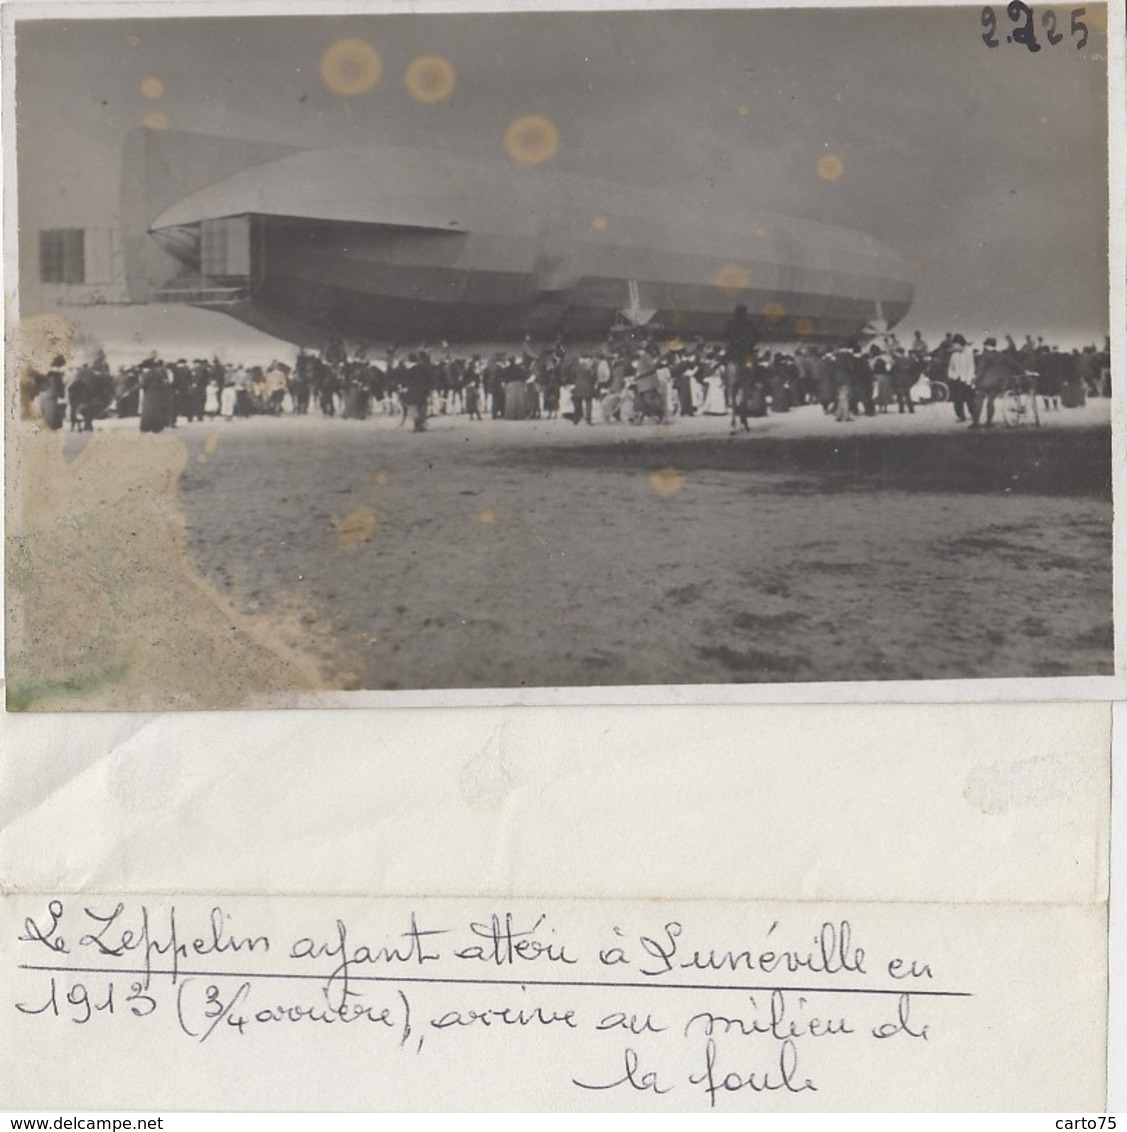 Aviation - Photographie - Dirigeable Zeppelin A Attéri à Lunéville 1913 - Militaria - Photo André Le Bourget - Airships